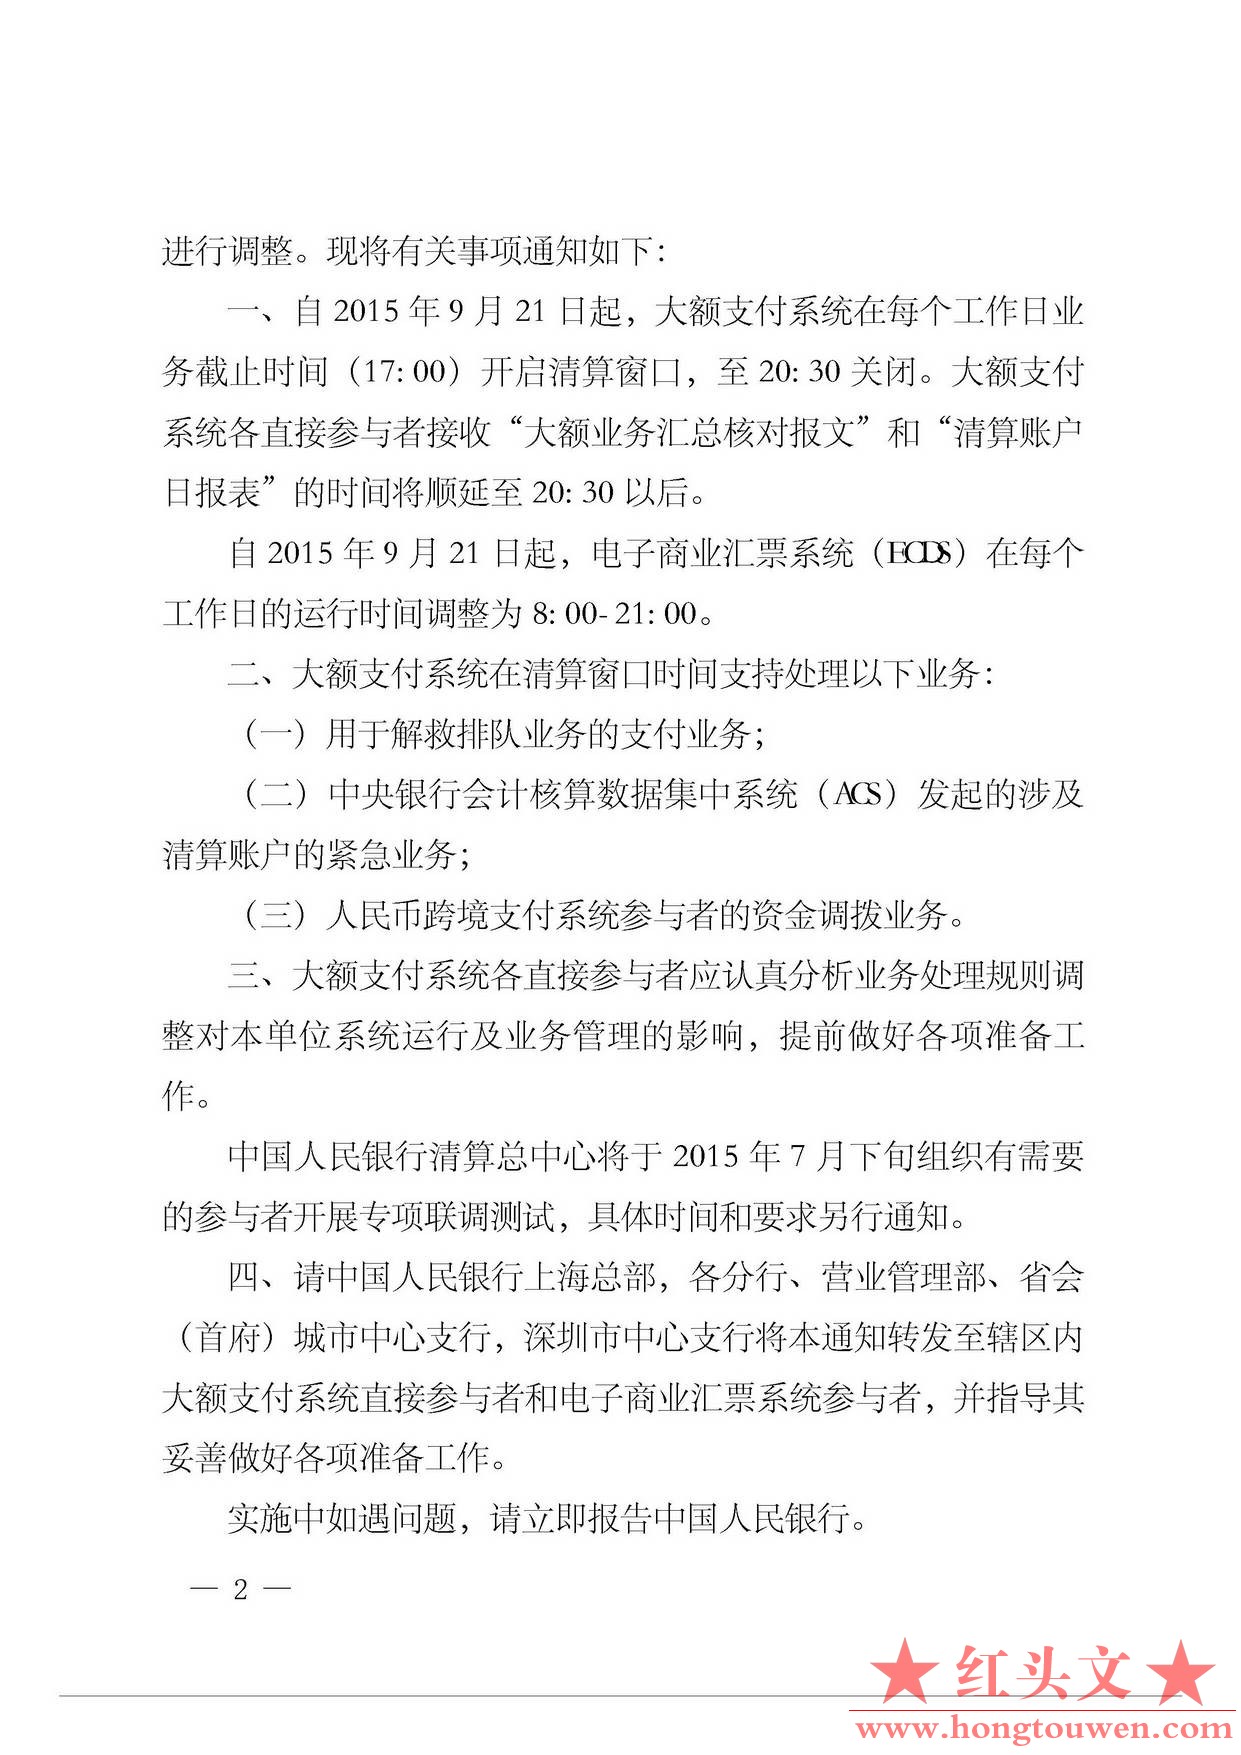 银办发[2015]137号-中国人民银行办公厅关于调整大额支付系统清算窗口时间业务处理规则.jpg